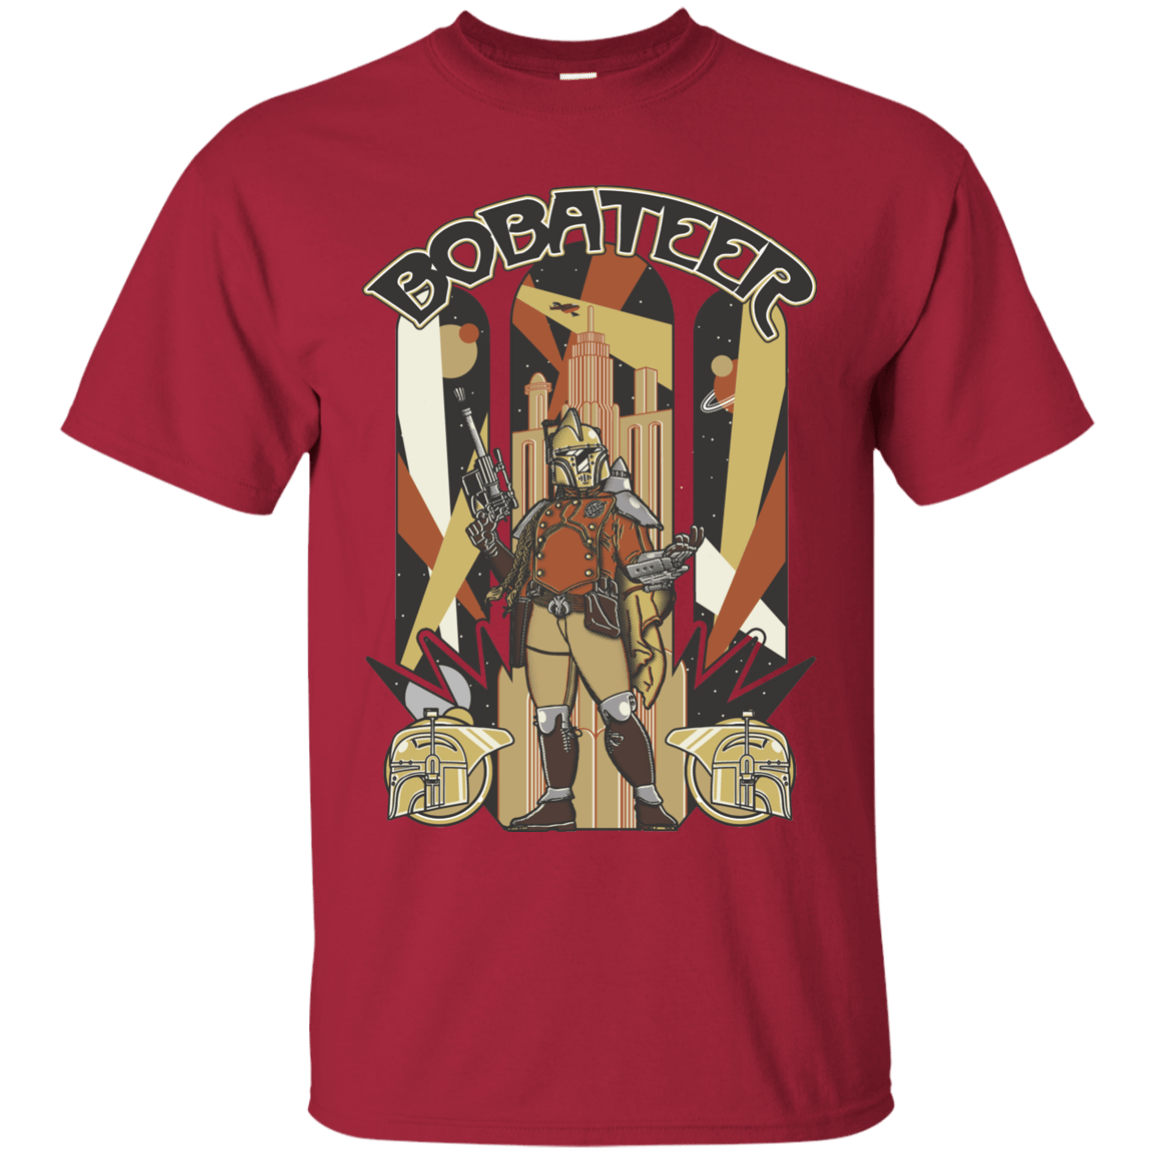 T-Shirts Cardinal / Small Bobateer T-Shirt